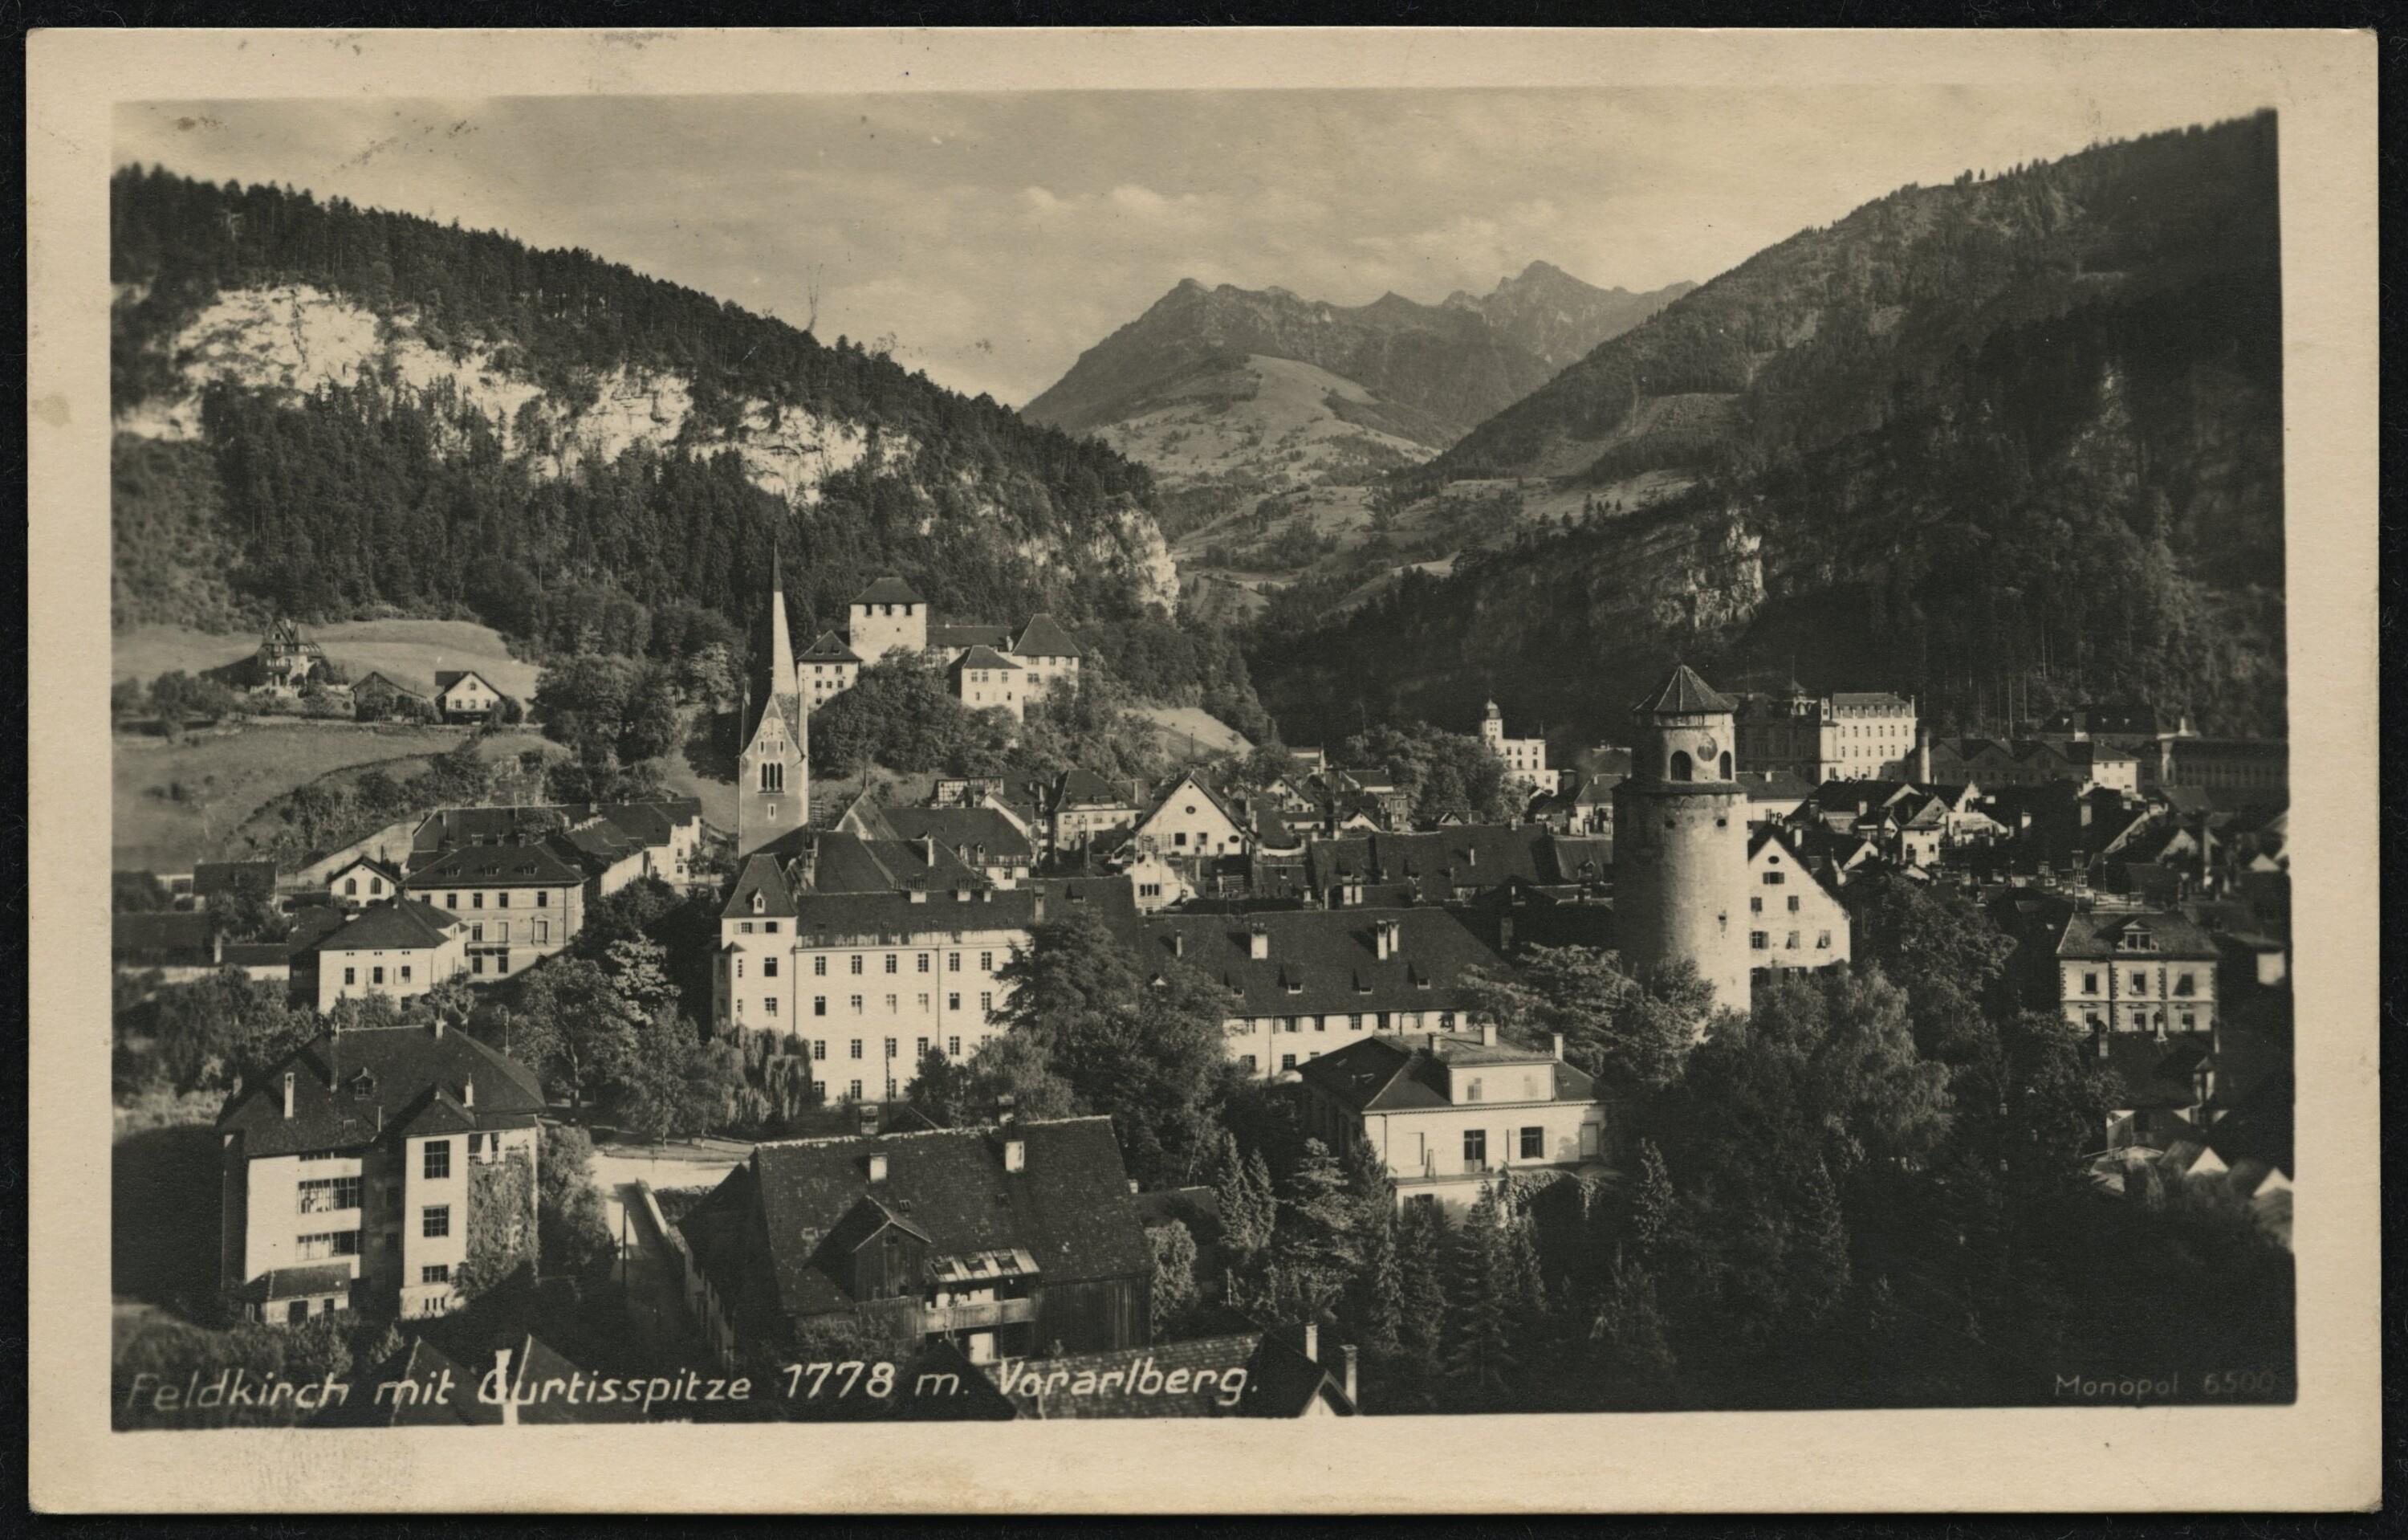 Feldkirch mit Gurtisspitze 1778 m. Vorarlberg></div>


    <hr>
    <div class=